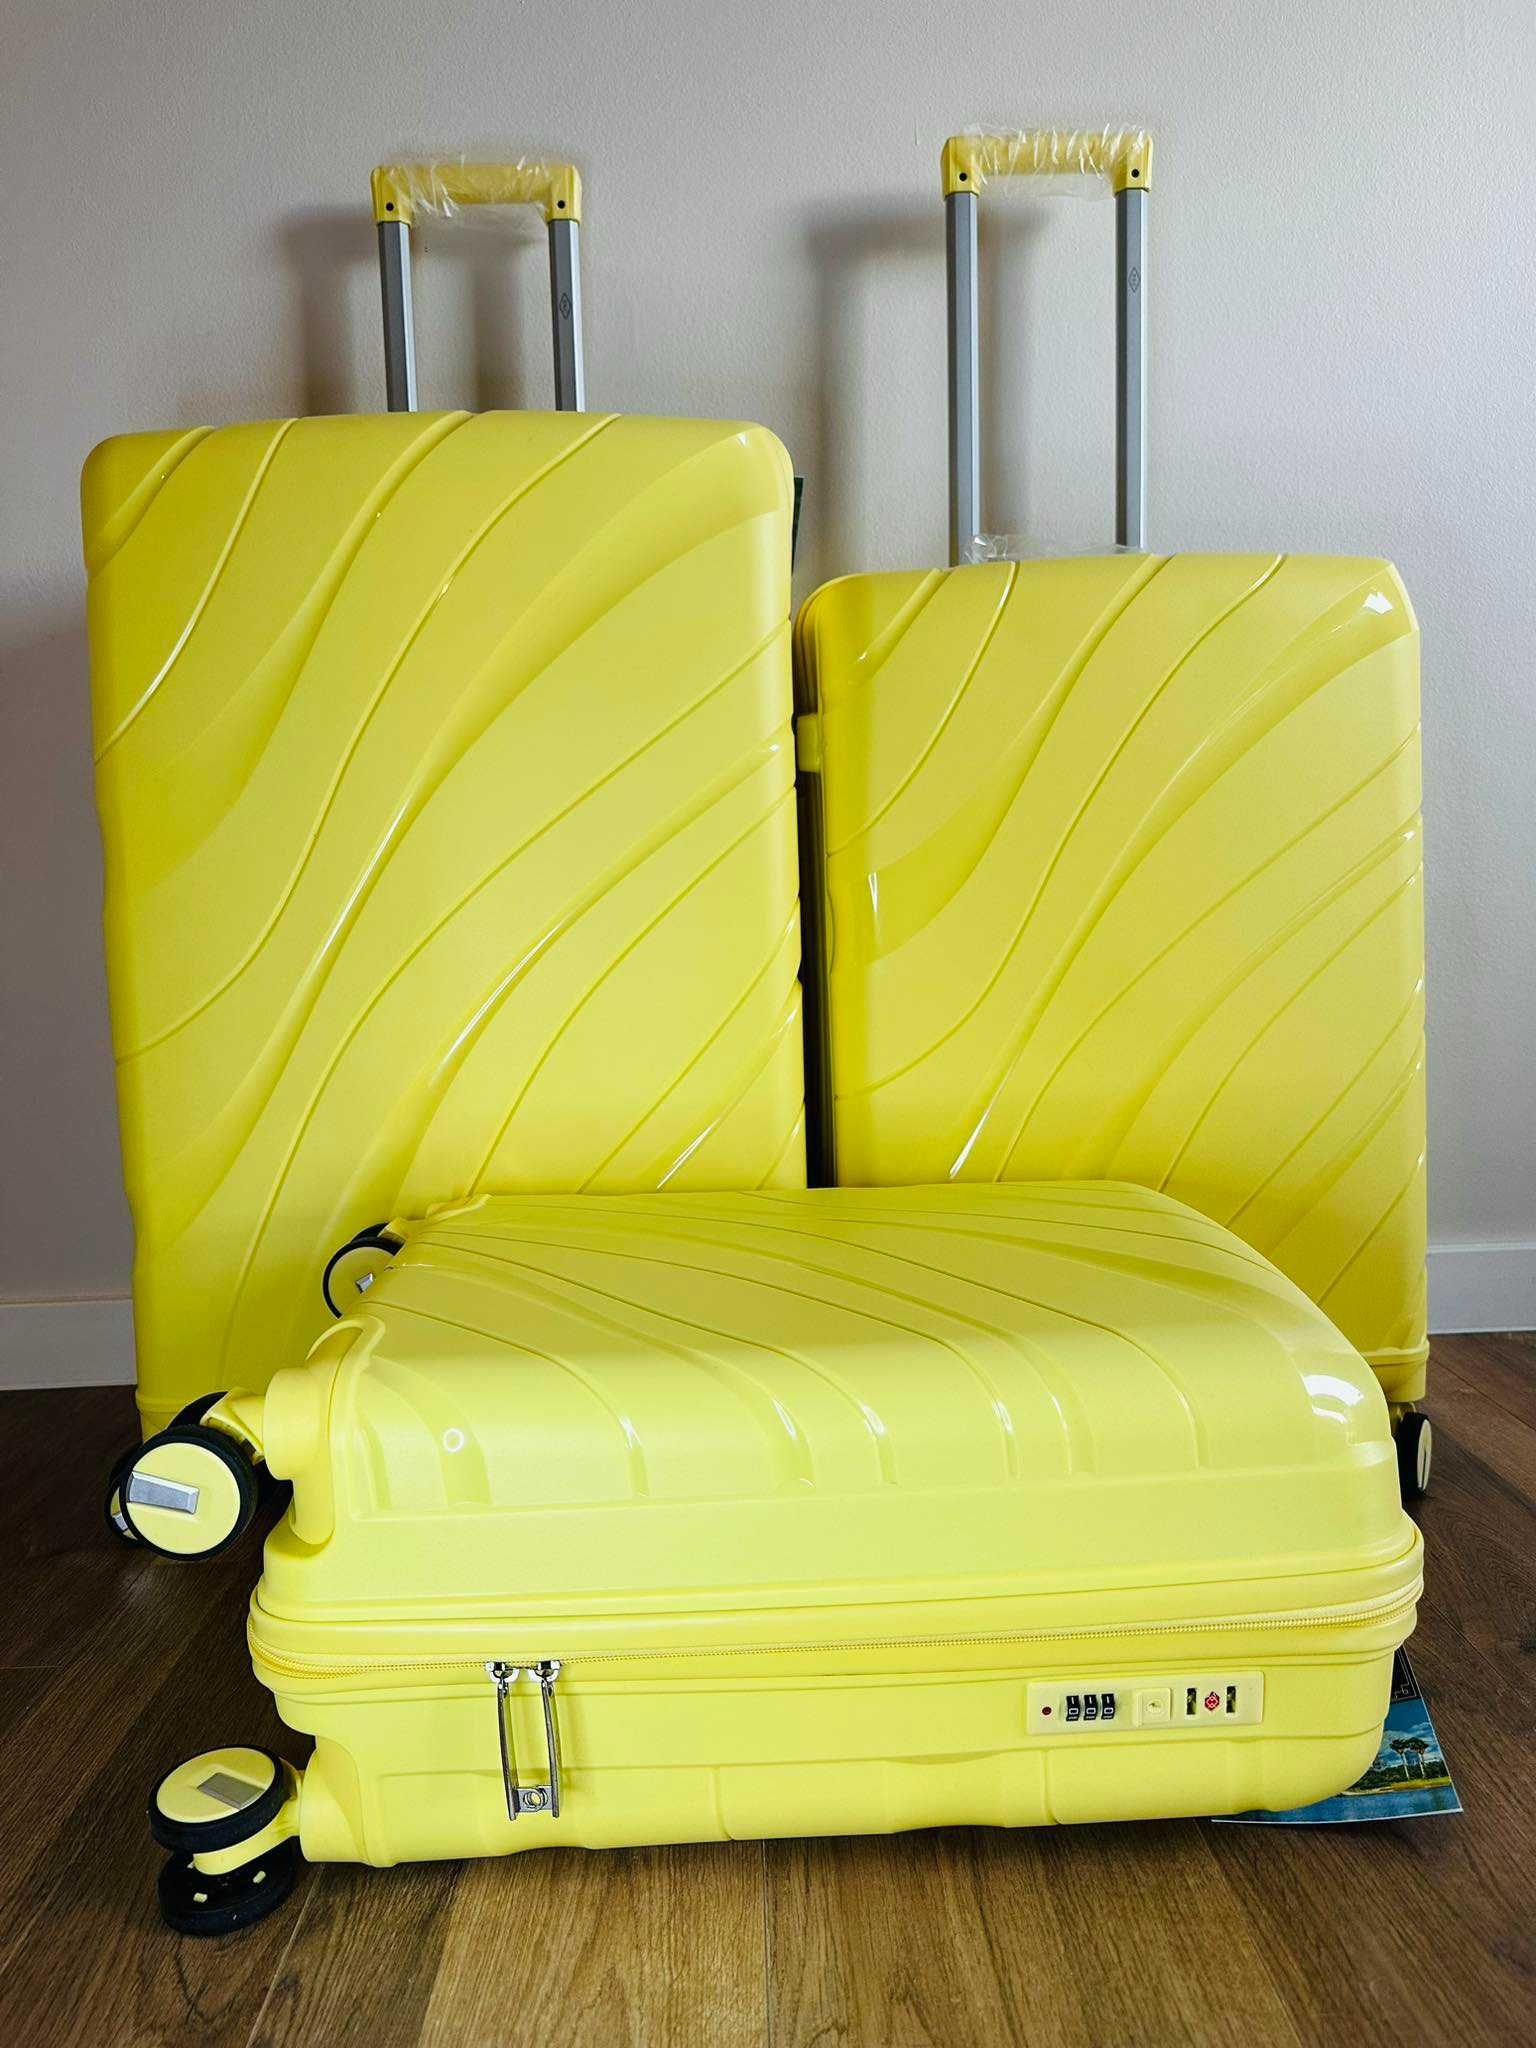 nowe walizki - walizka polipropylen, różne wymiary, mix kolor